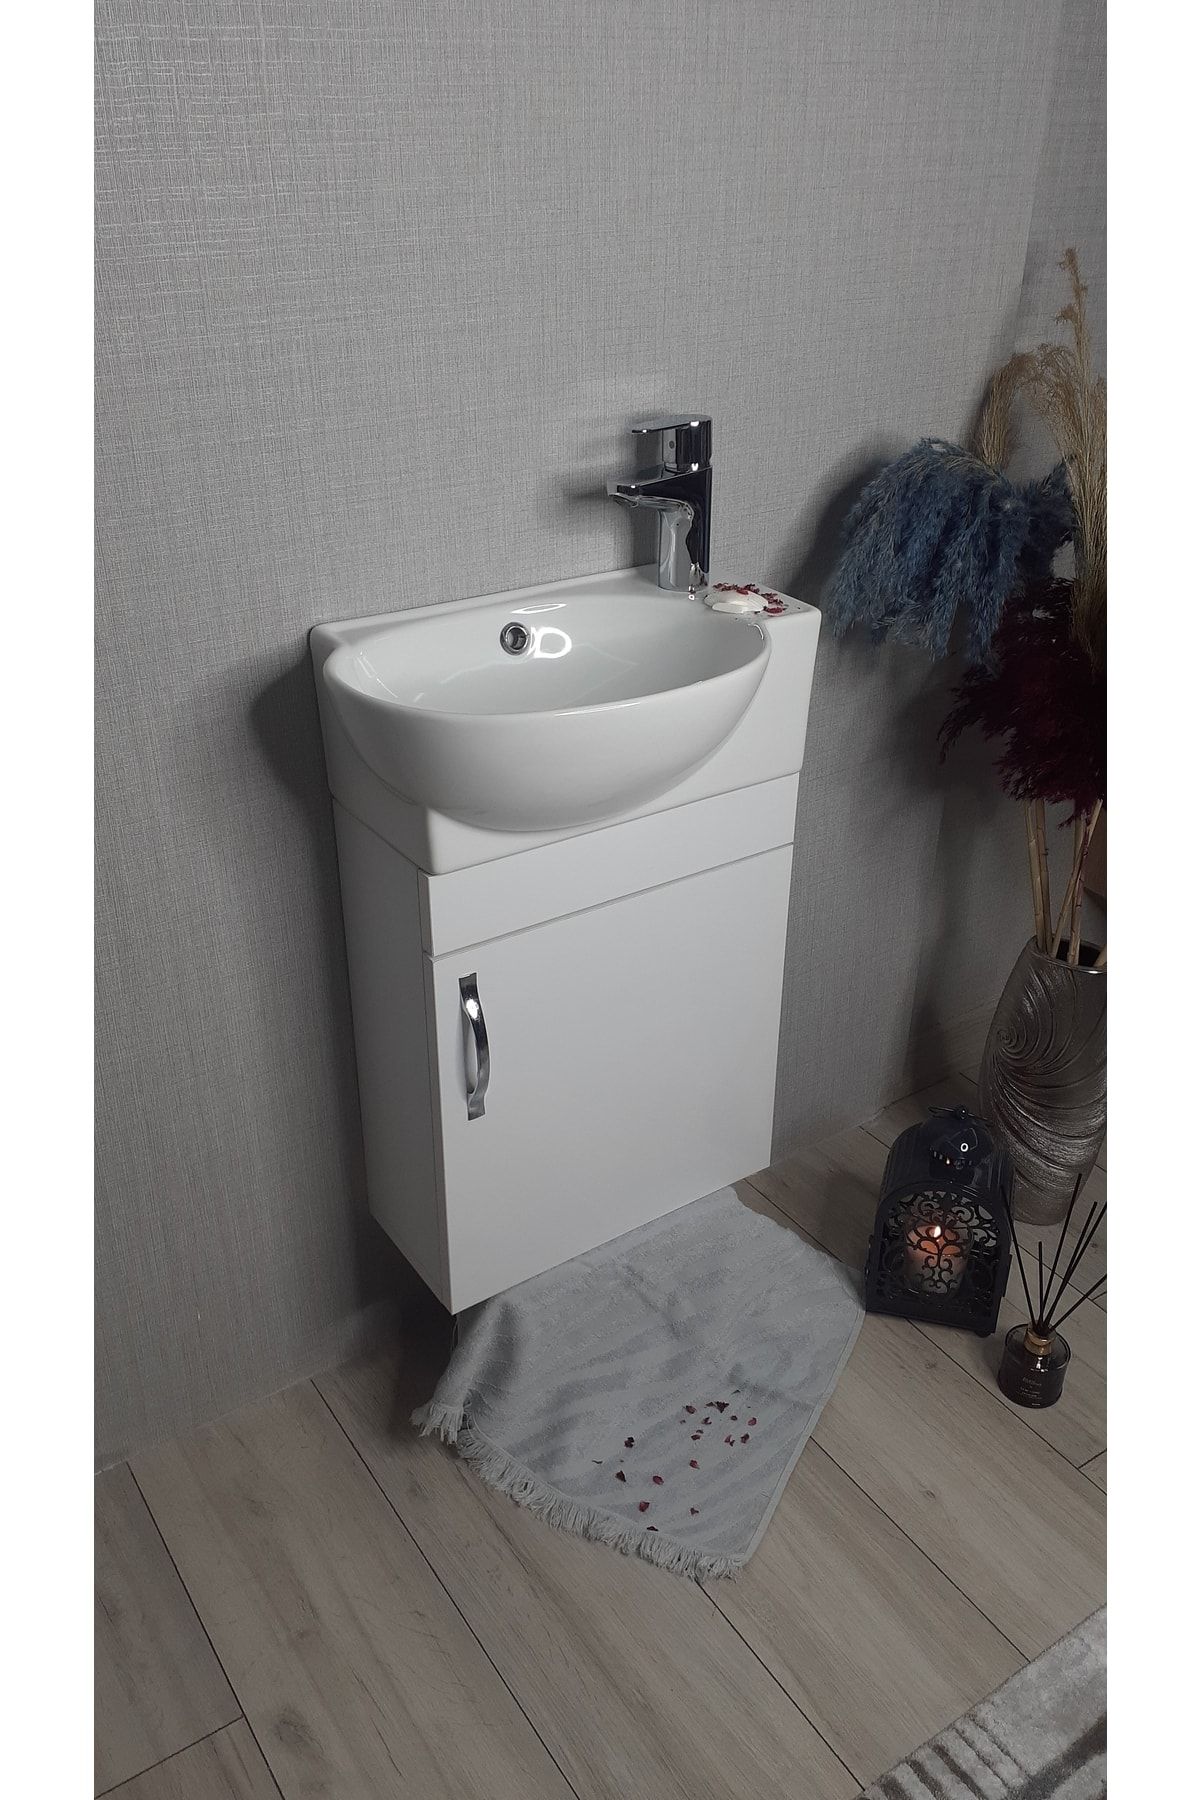 TURKUAZSERAMİK Turkuaz Banyo Ve Tuvalet Mini Köşe Lavabo 28*45 Cm (banyo Dolabı Dahil)